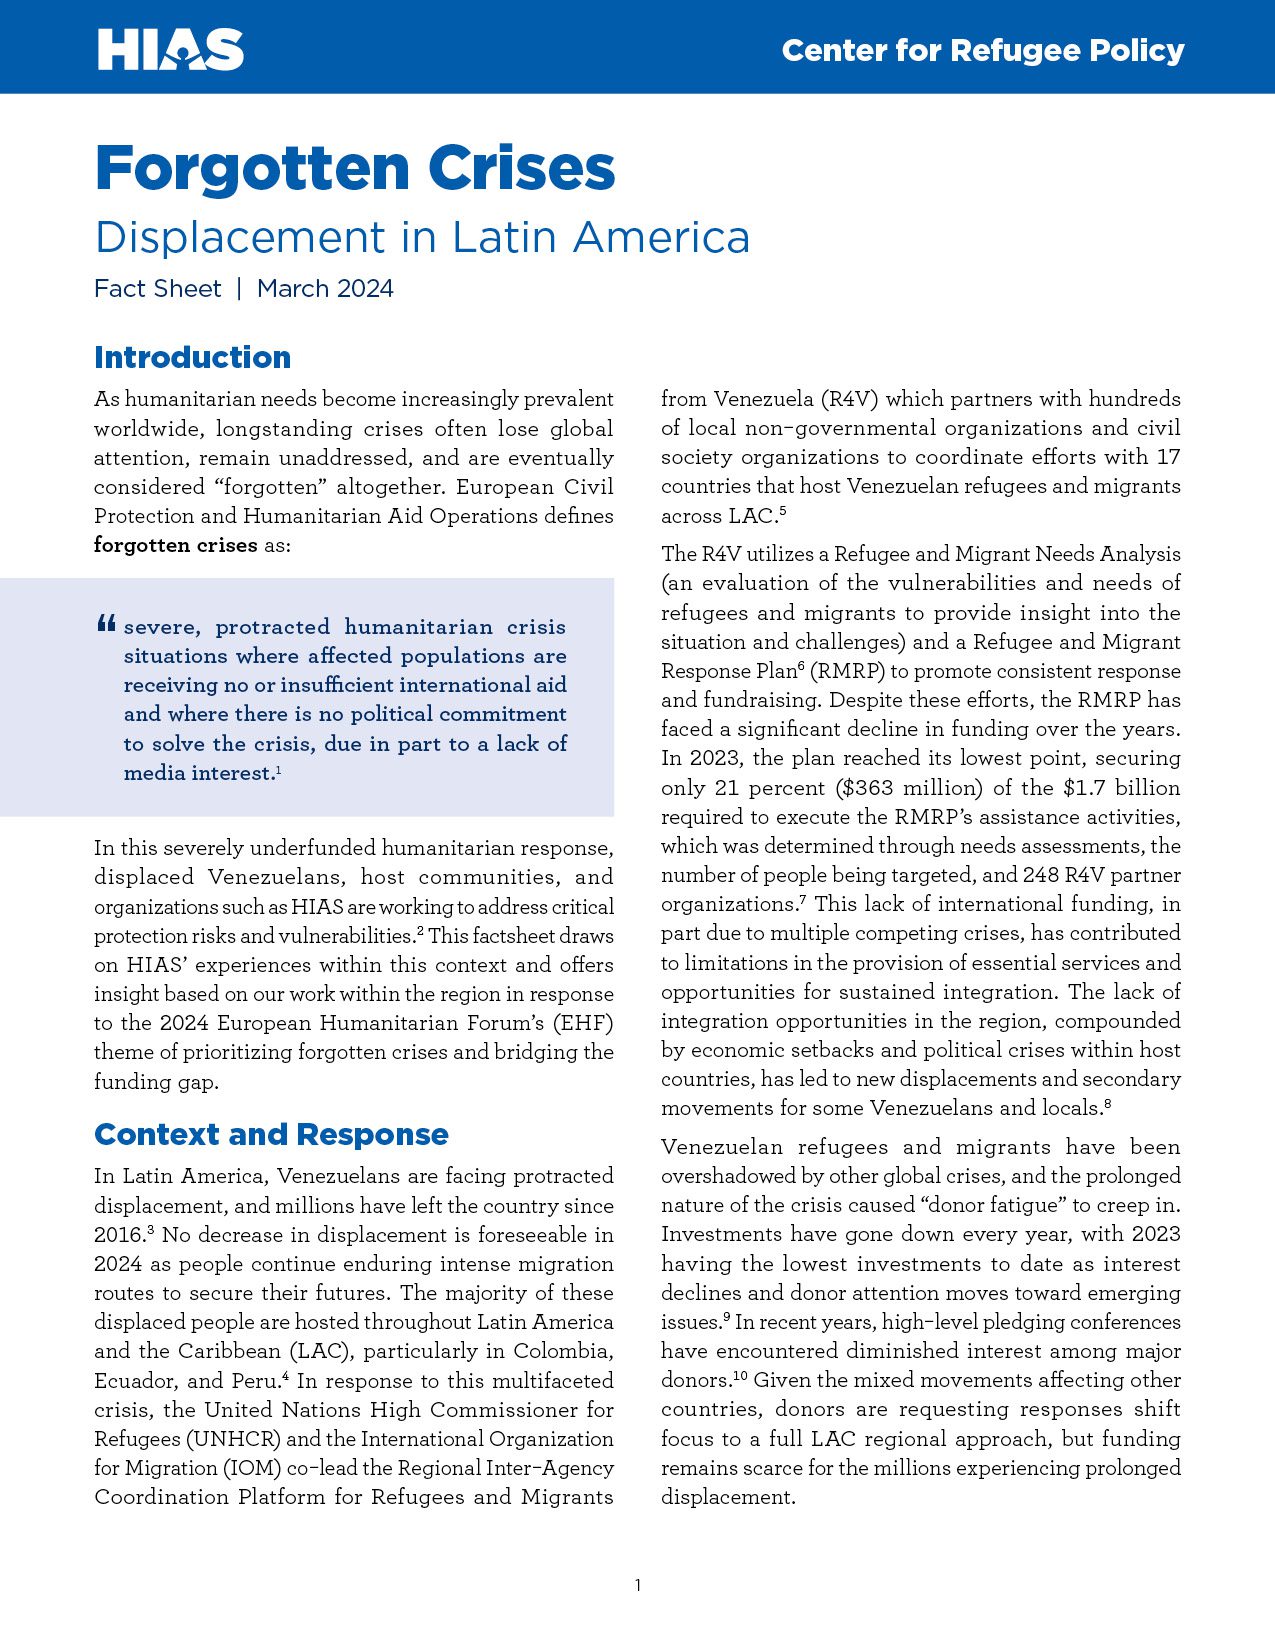 Crisis olvidadas: Desplazamiento en América Latina